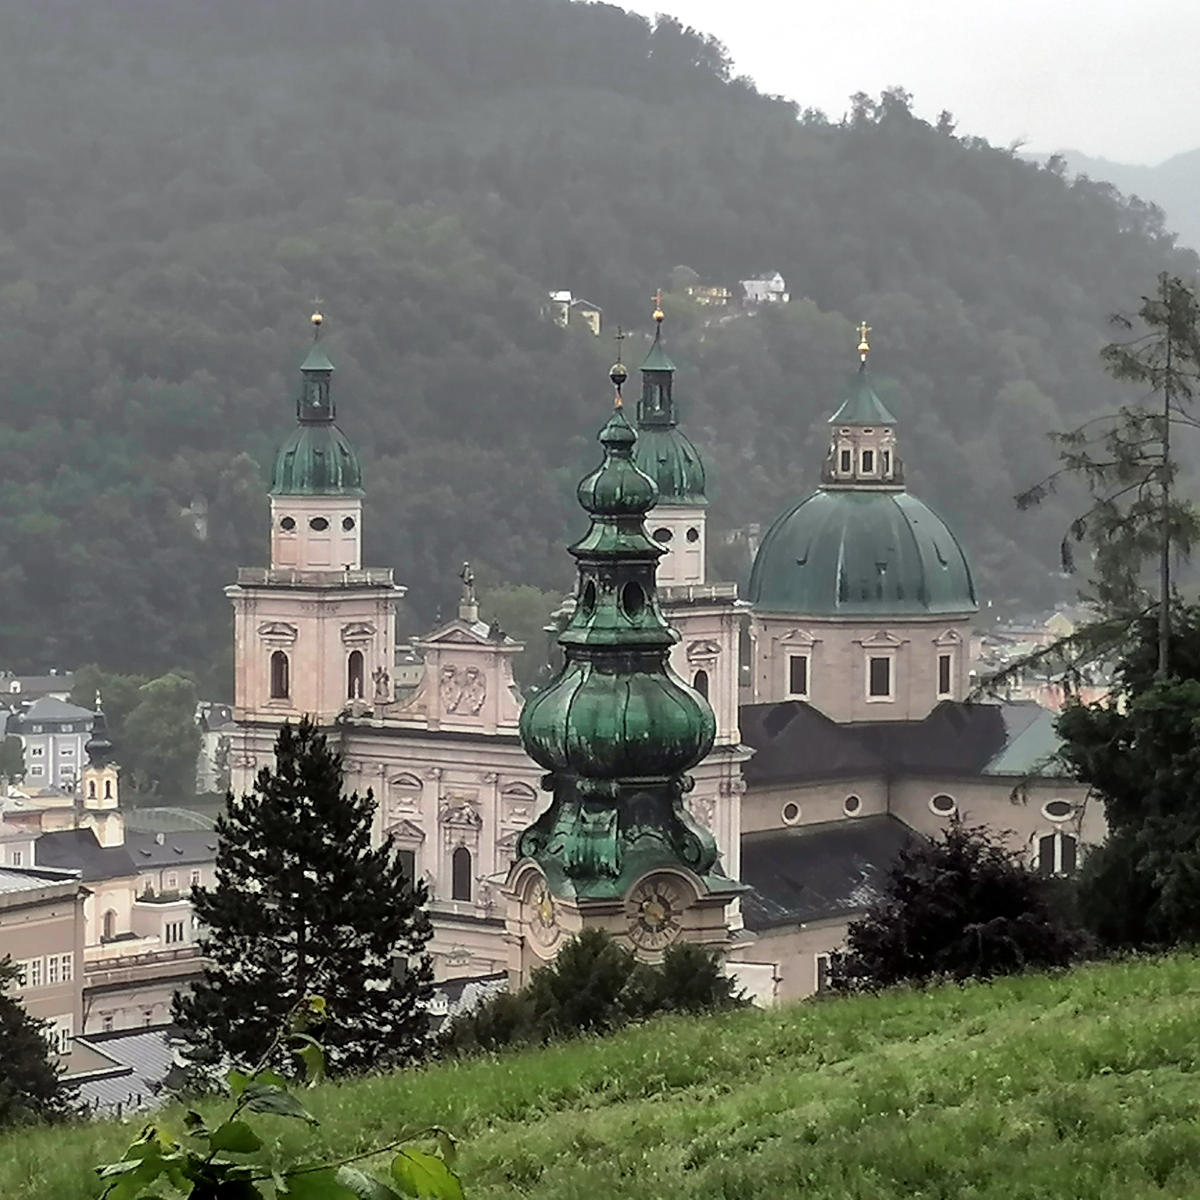 12 Attraktionen, die du in Salzburg sehen kannst